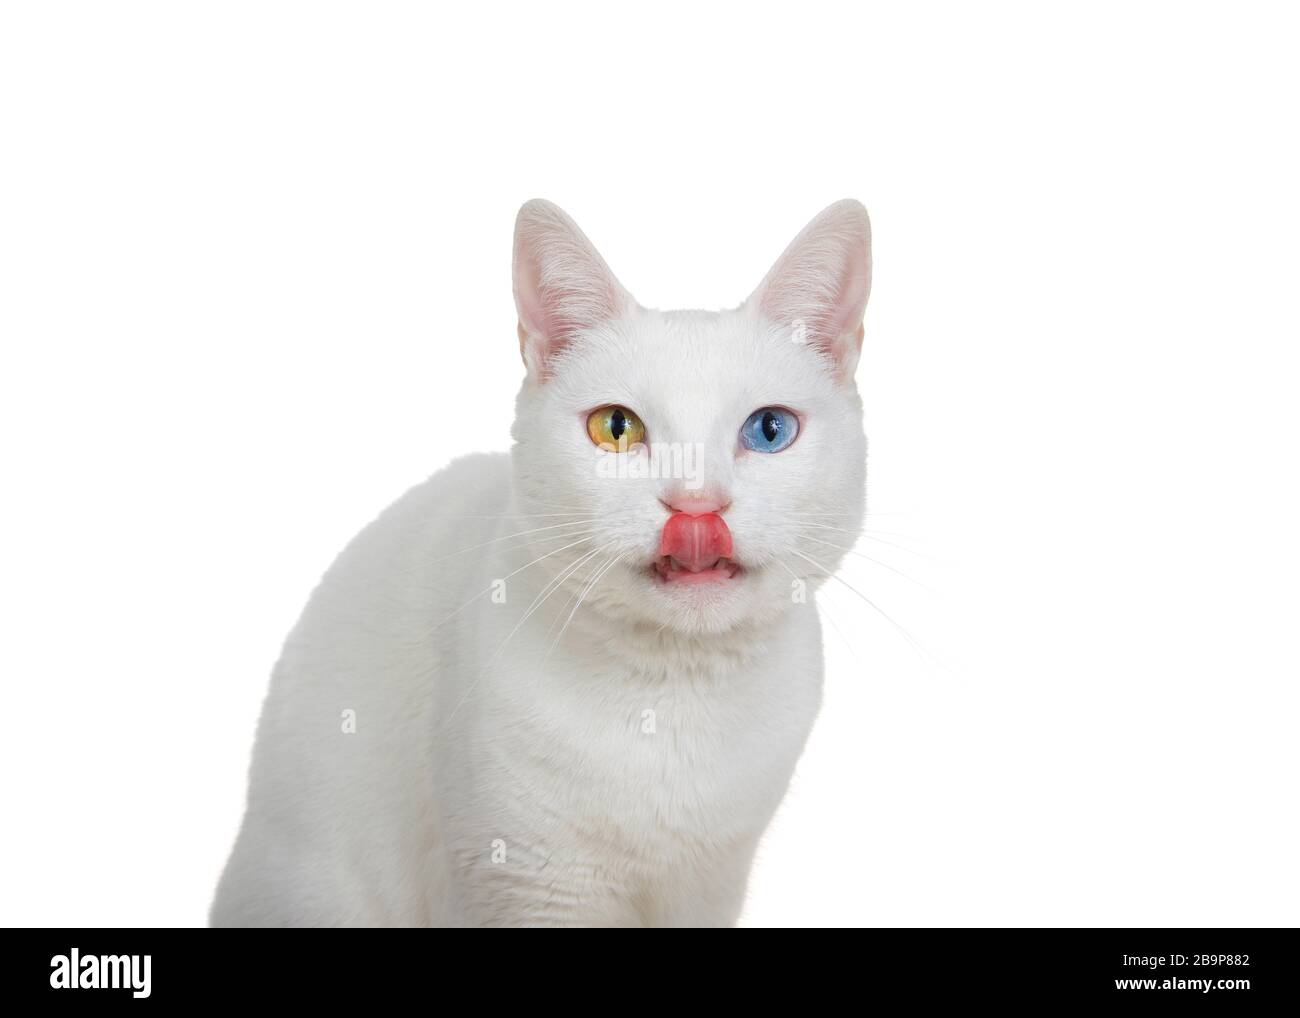 Gros plan portrait d'un chat blanc avec hétérochromie, yeux impairs, regardant directement le spectateur avec la langue qui s'encolle. Isolé sur fond blanc. Banque D'Images